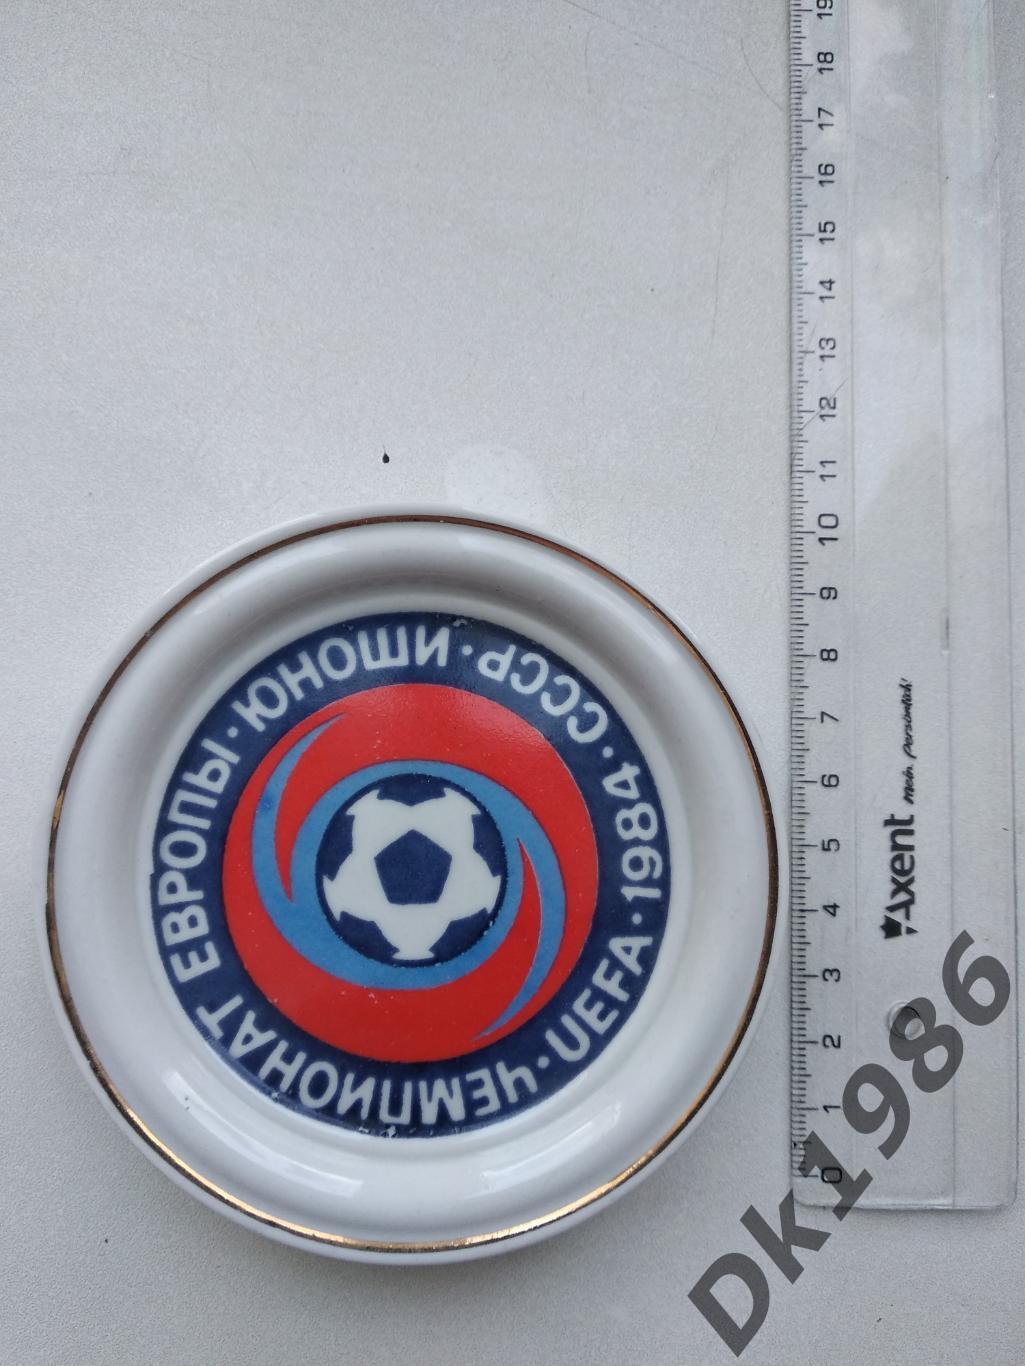 Підставка (кераміка) ЕВРО -1984 по футболу серед юнаків